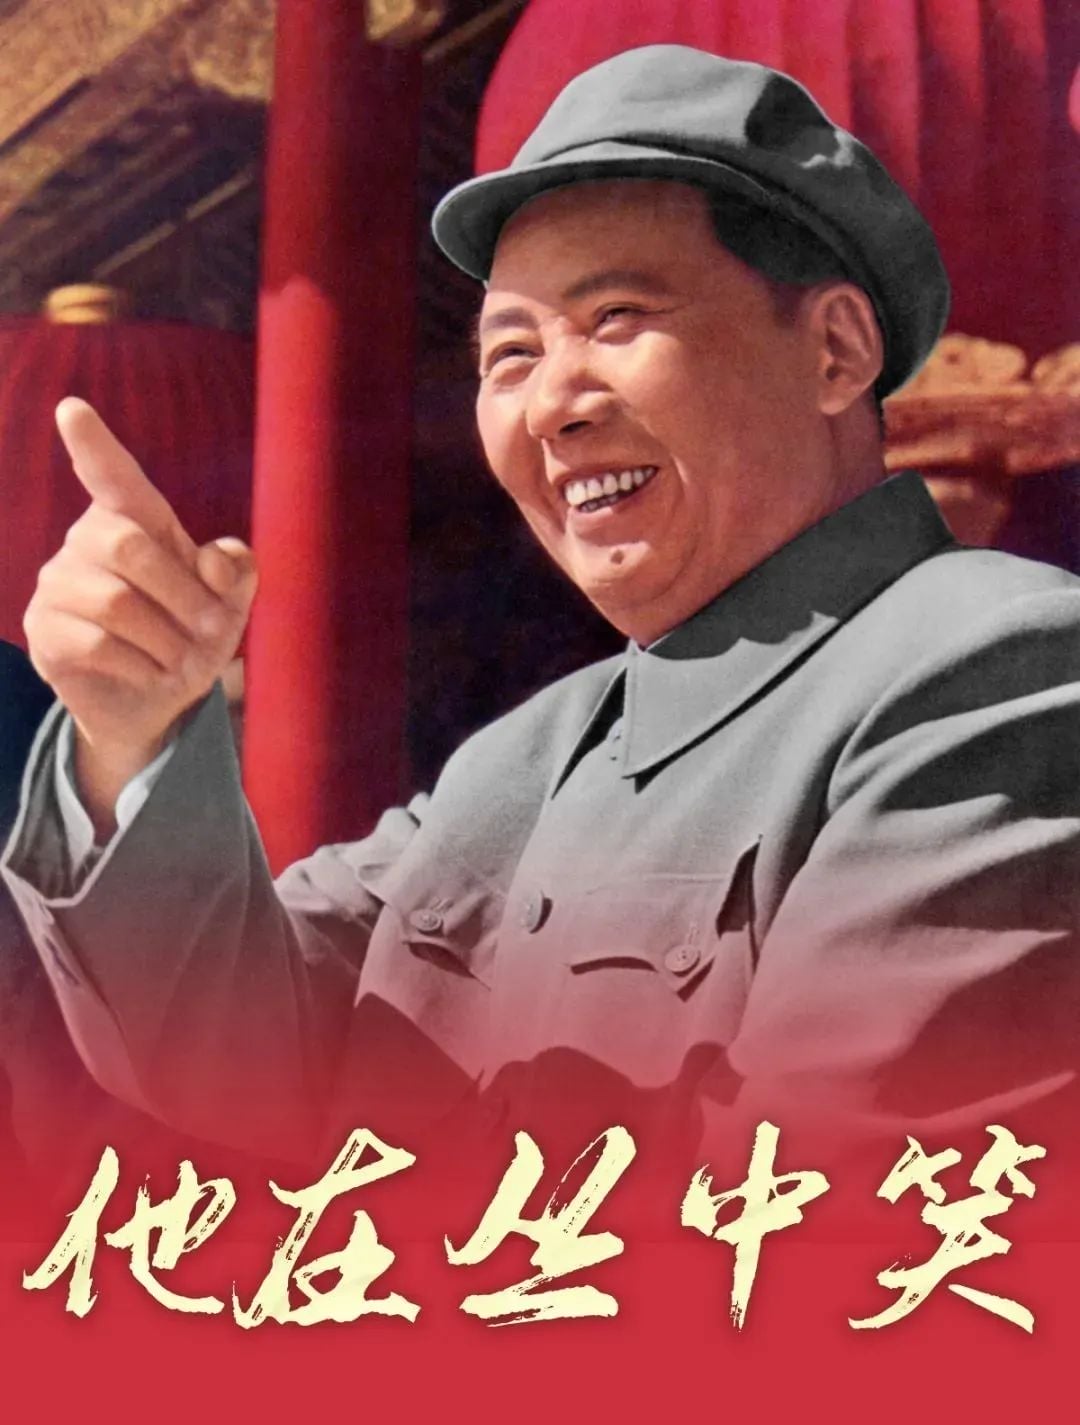 缅怀伟人 | 纪念毛泽东诞辰129周年 